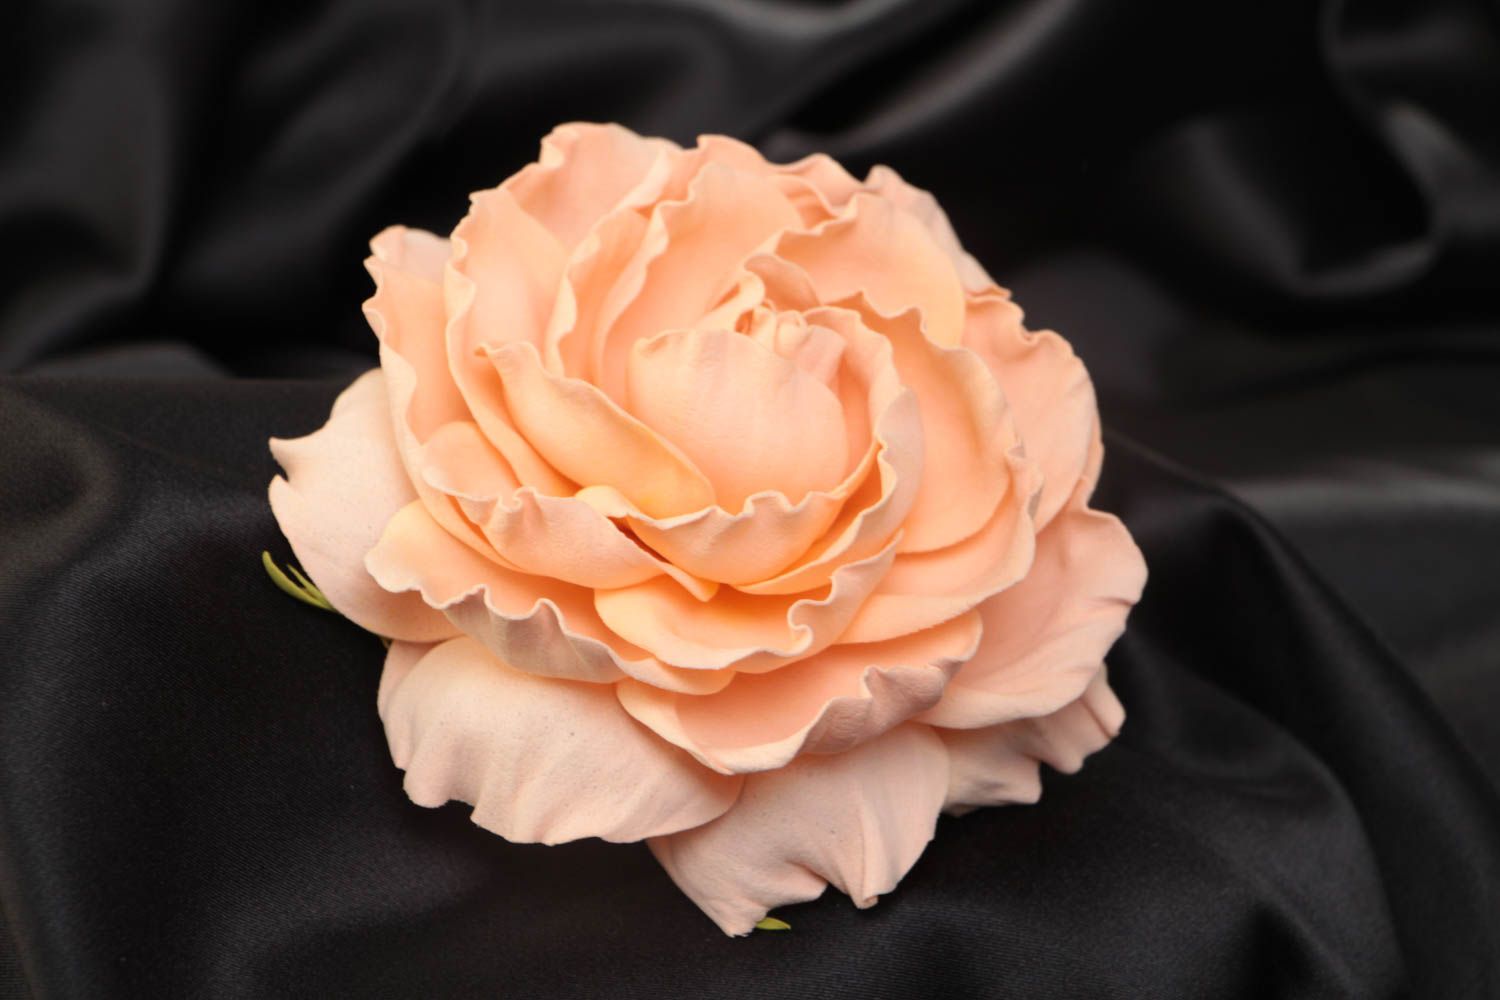 Заготовка под брошь в виде цветка из фоамирана ручной работы персиковая красивая фото 1